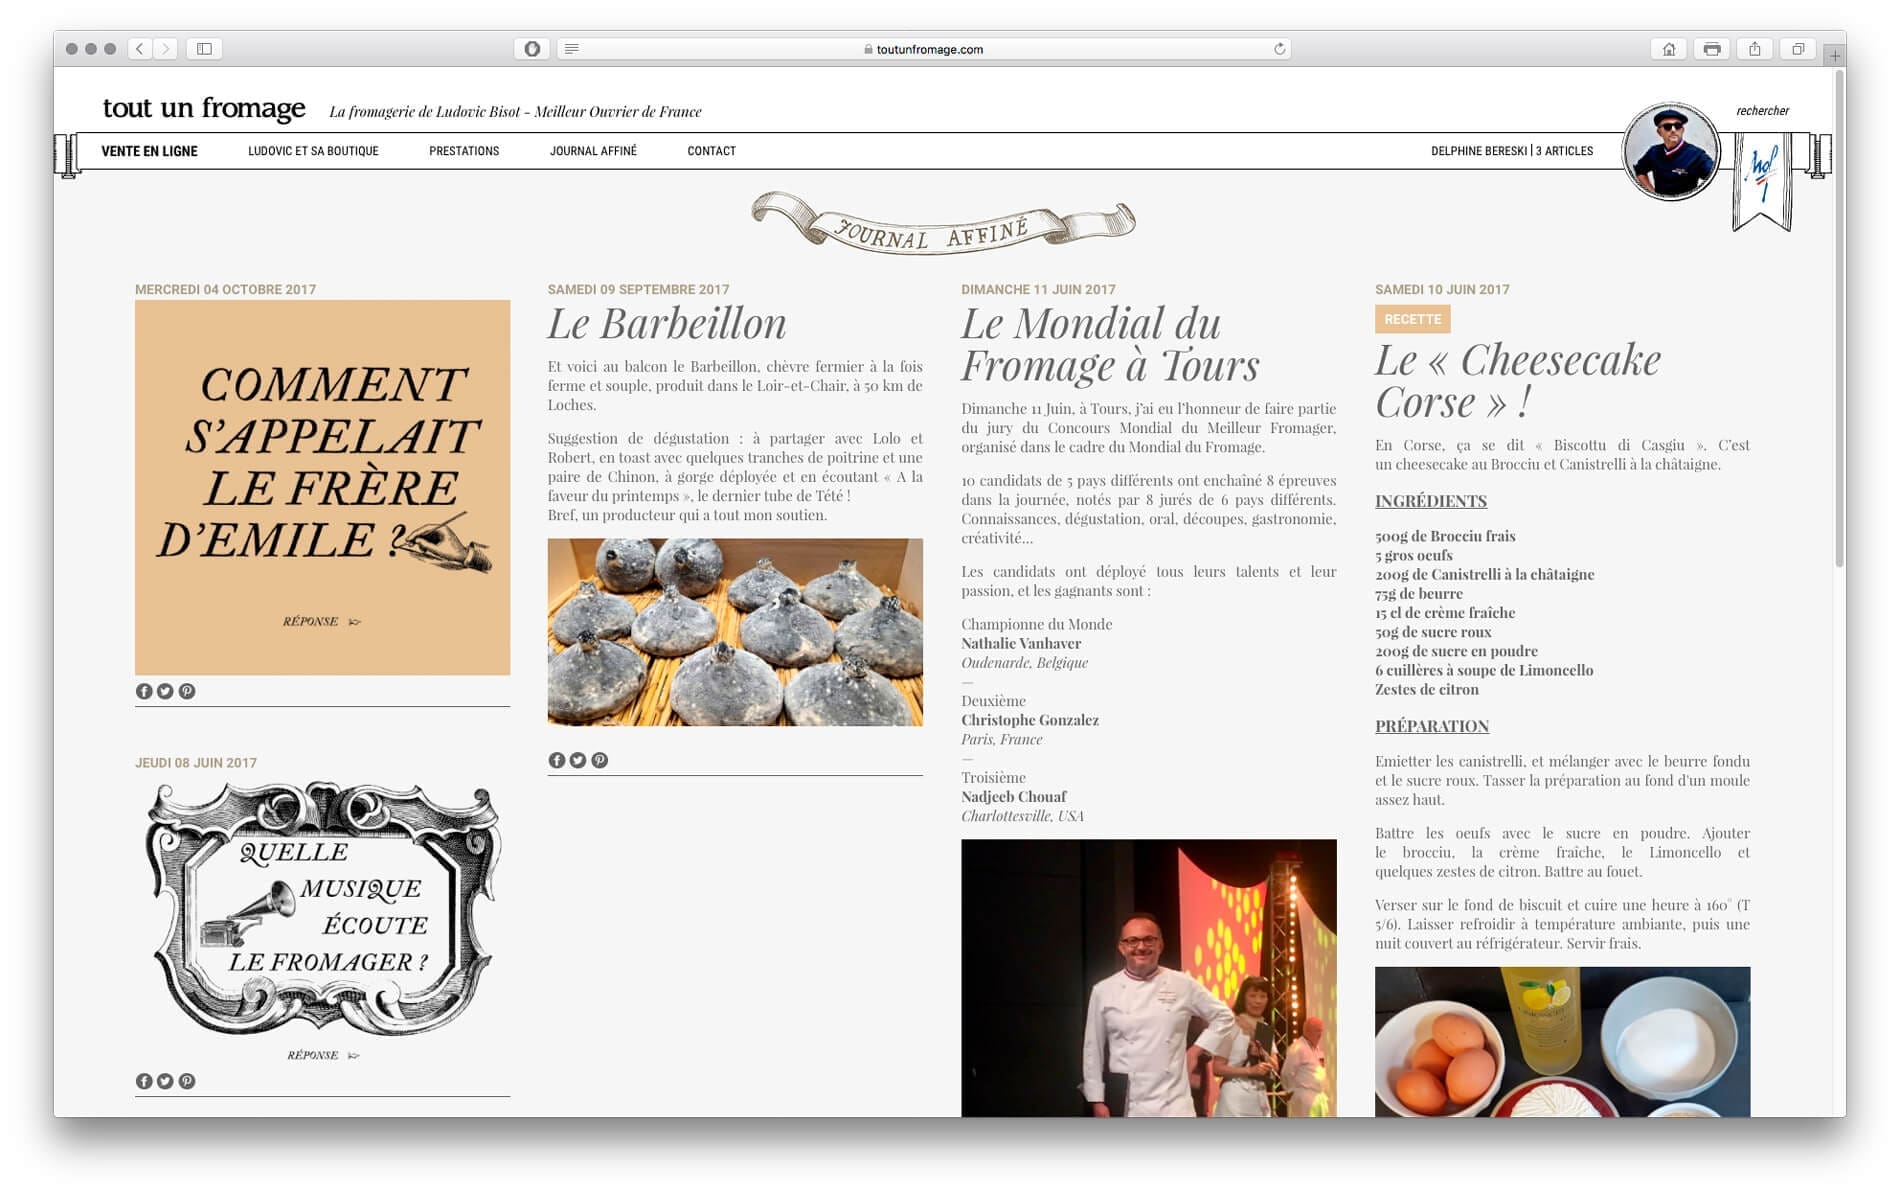 La page journal du site web du fromager tout un fromage, design Ichetkar